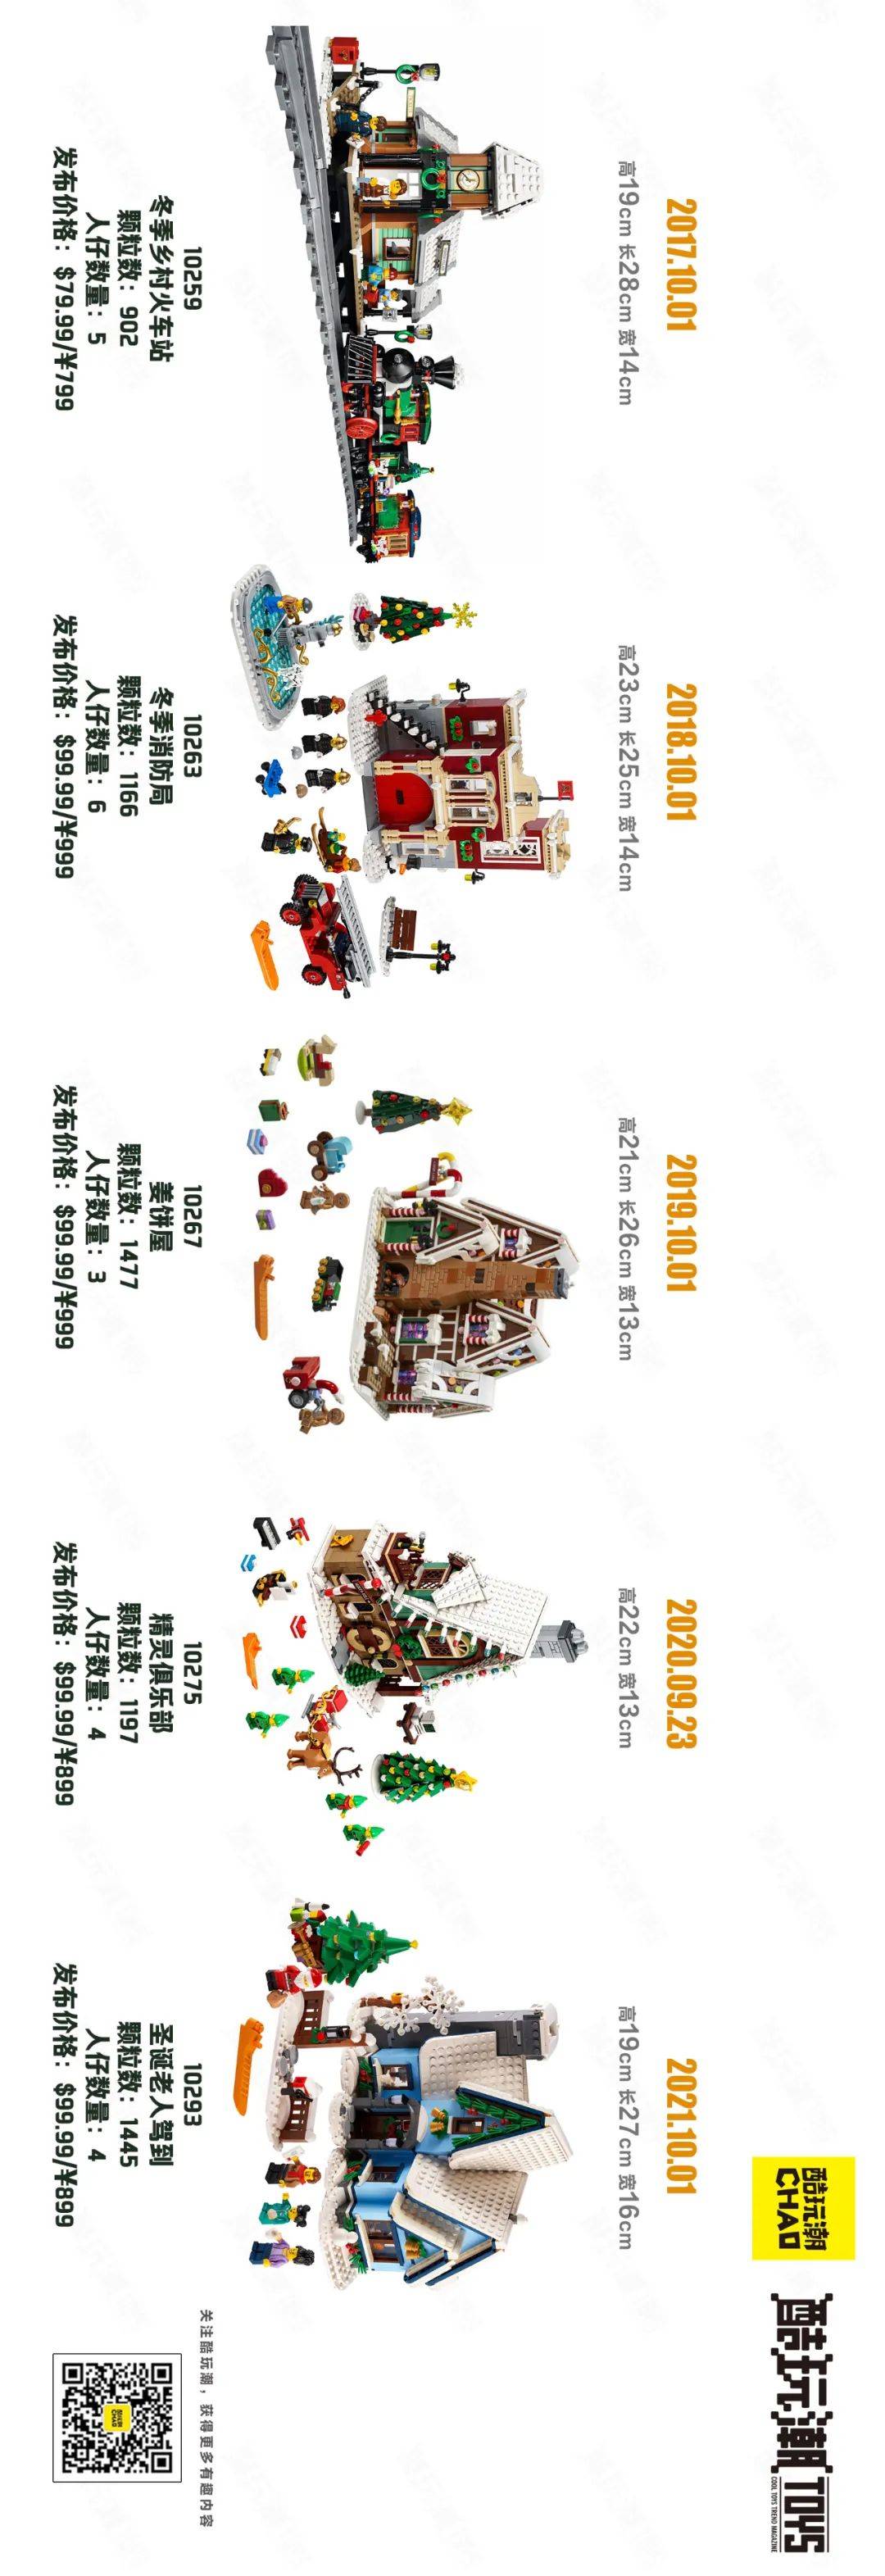 乐高2009-2021年冬季乡村系列圣诞套装汇总一览及横向对比图【酷玩潮年度总结系列】 -1